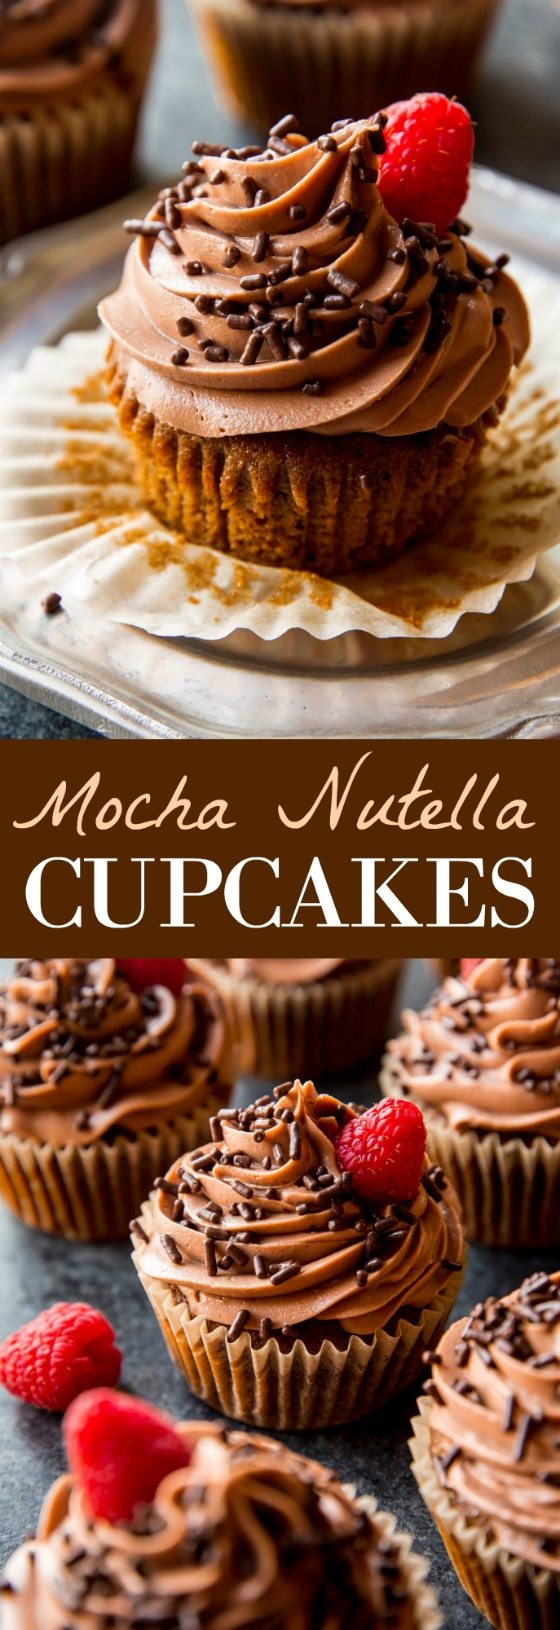 Cupcakes au Nutella moka moelleux, moelleux et moelleux avec glaçage au Nutella de Simply Beautiful Homemade Cakes! Recette sur sallysbakingaddiction.com